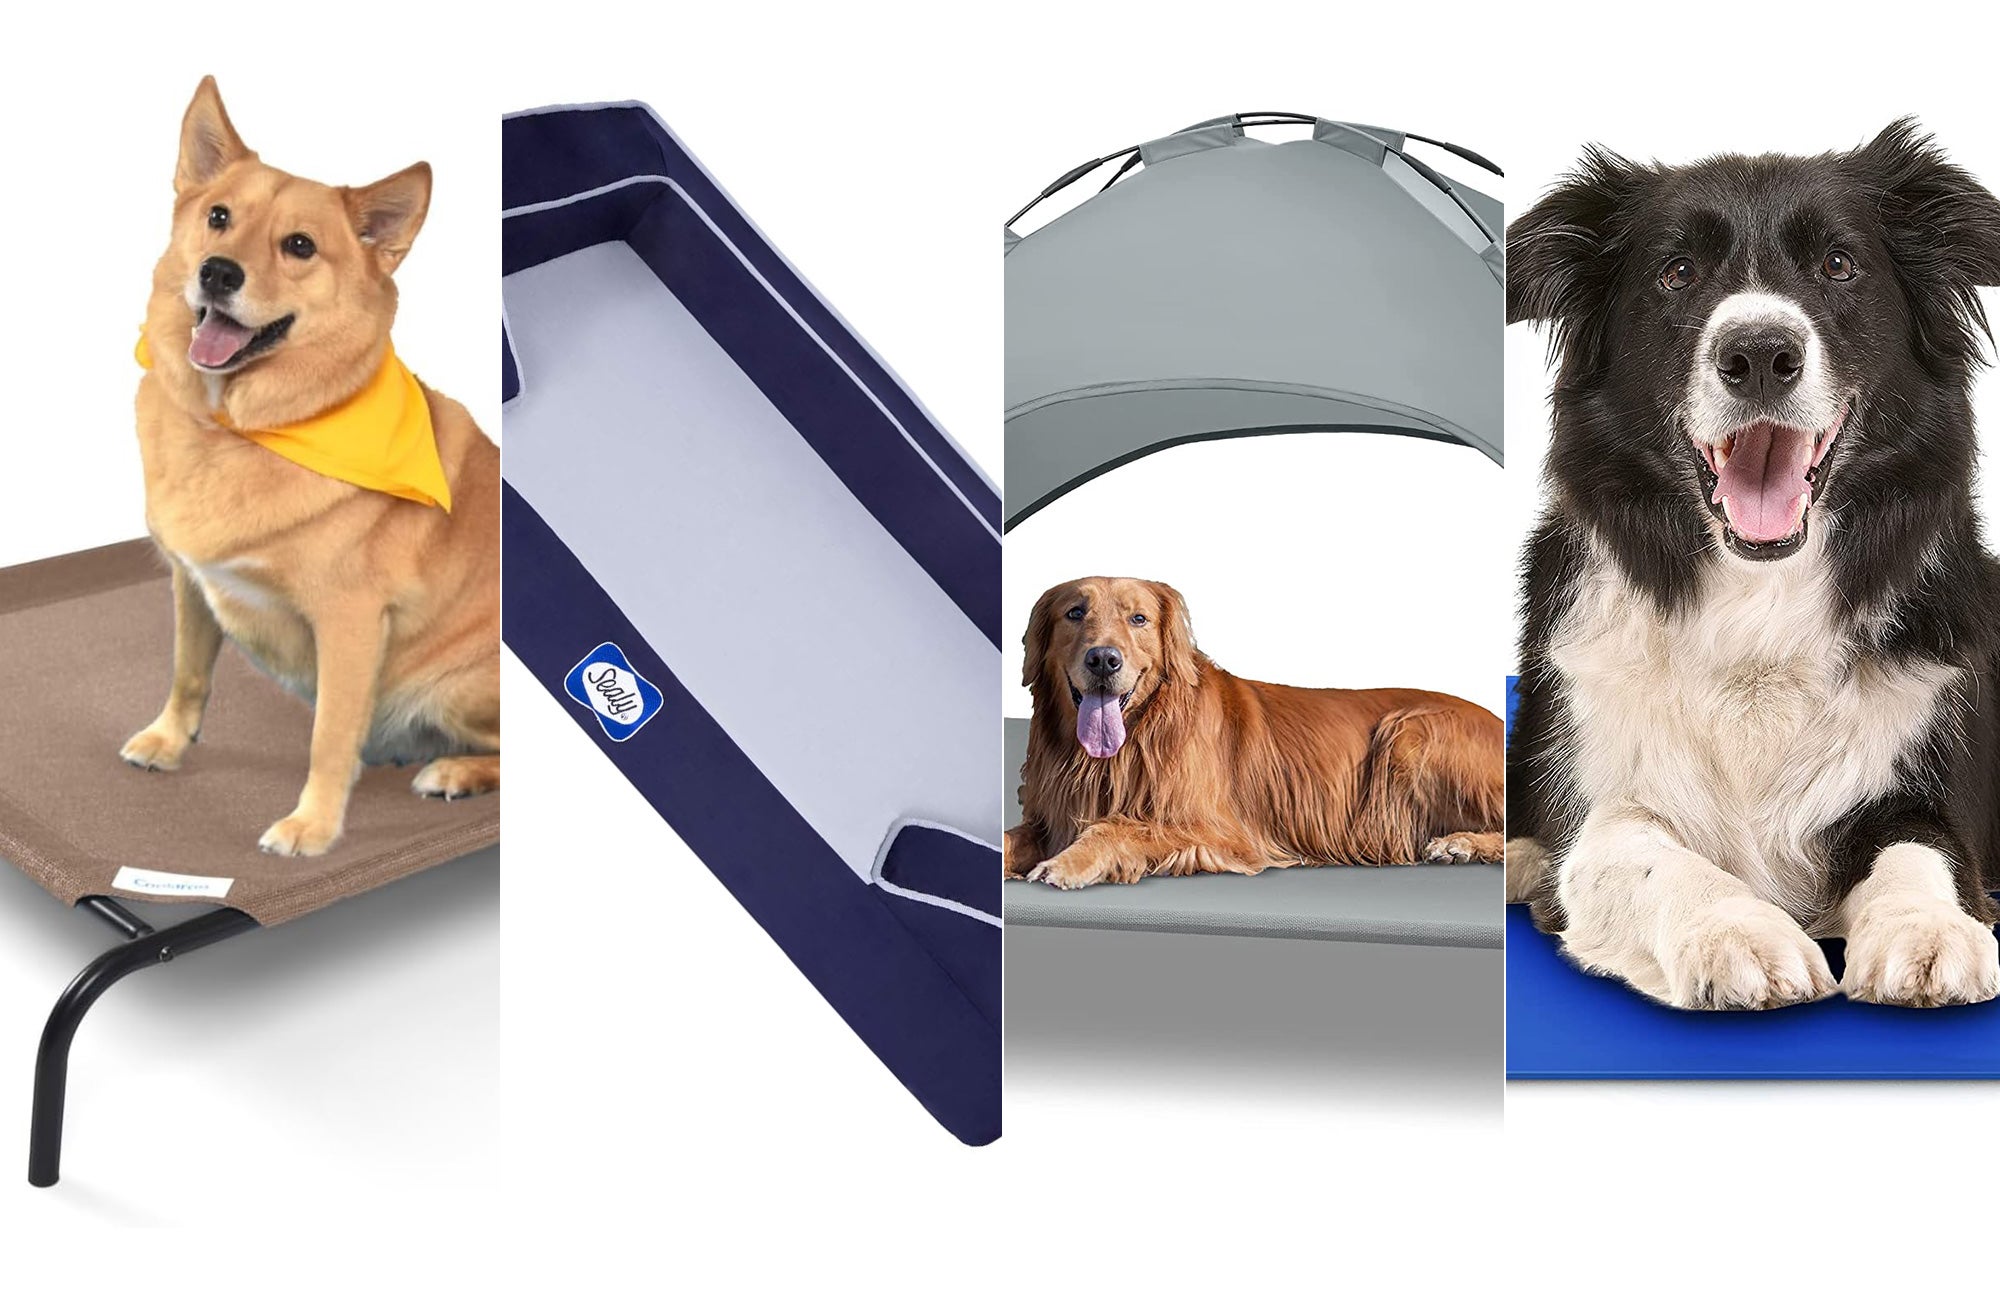 https://www.popsci.com/uploads/2023/06/12/best-cooling-dog-beds.jpg?auto=webp